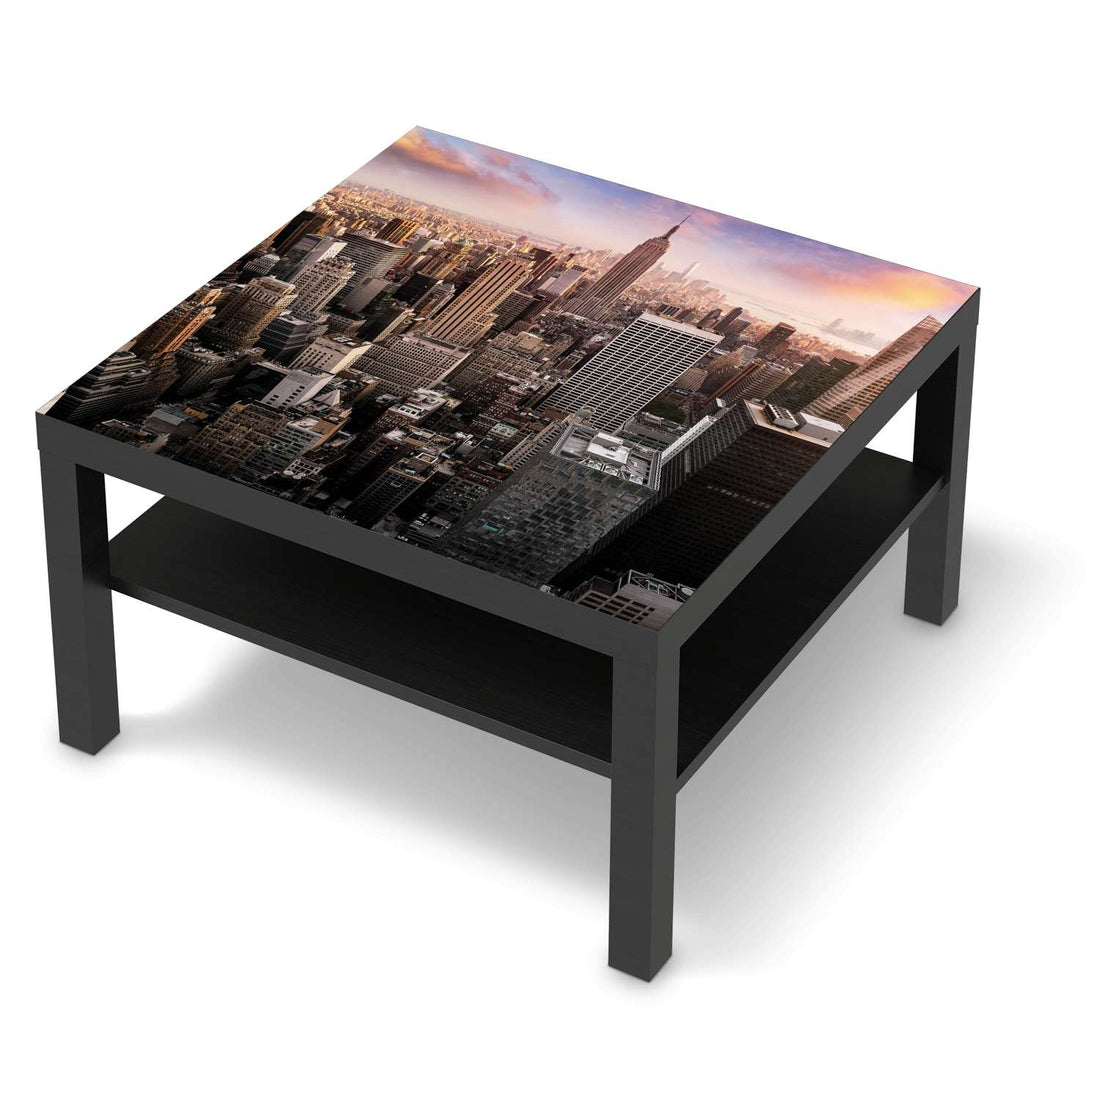 Selbstklebende Folie Big Apple - IKEA Lack Tisch 78x78 cm - schwarz